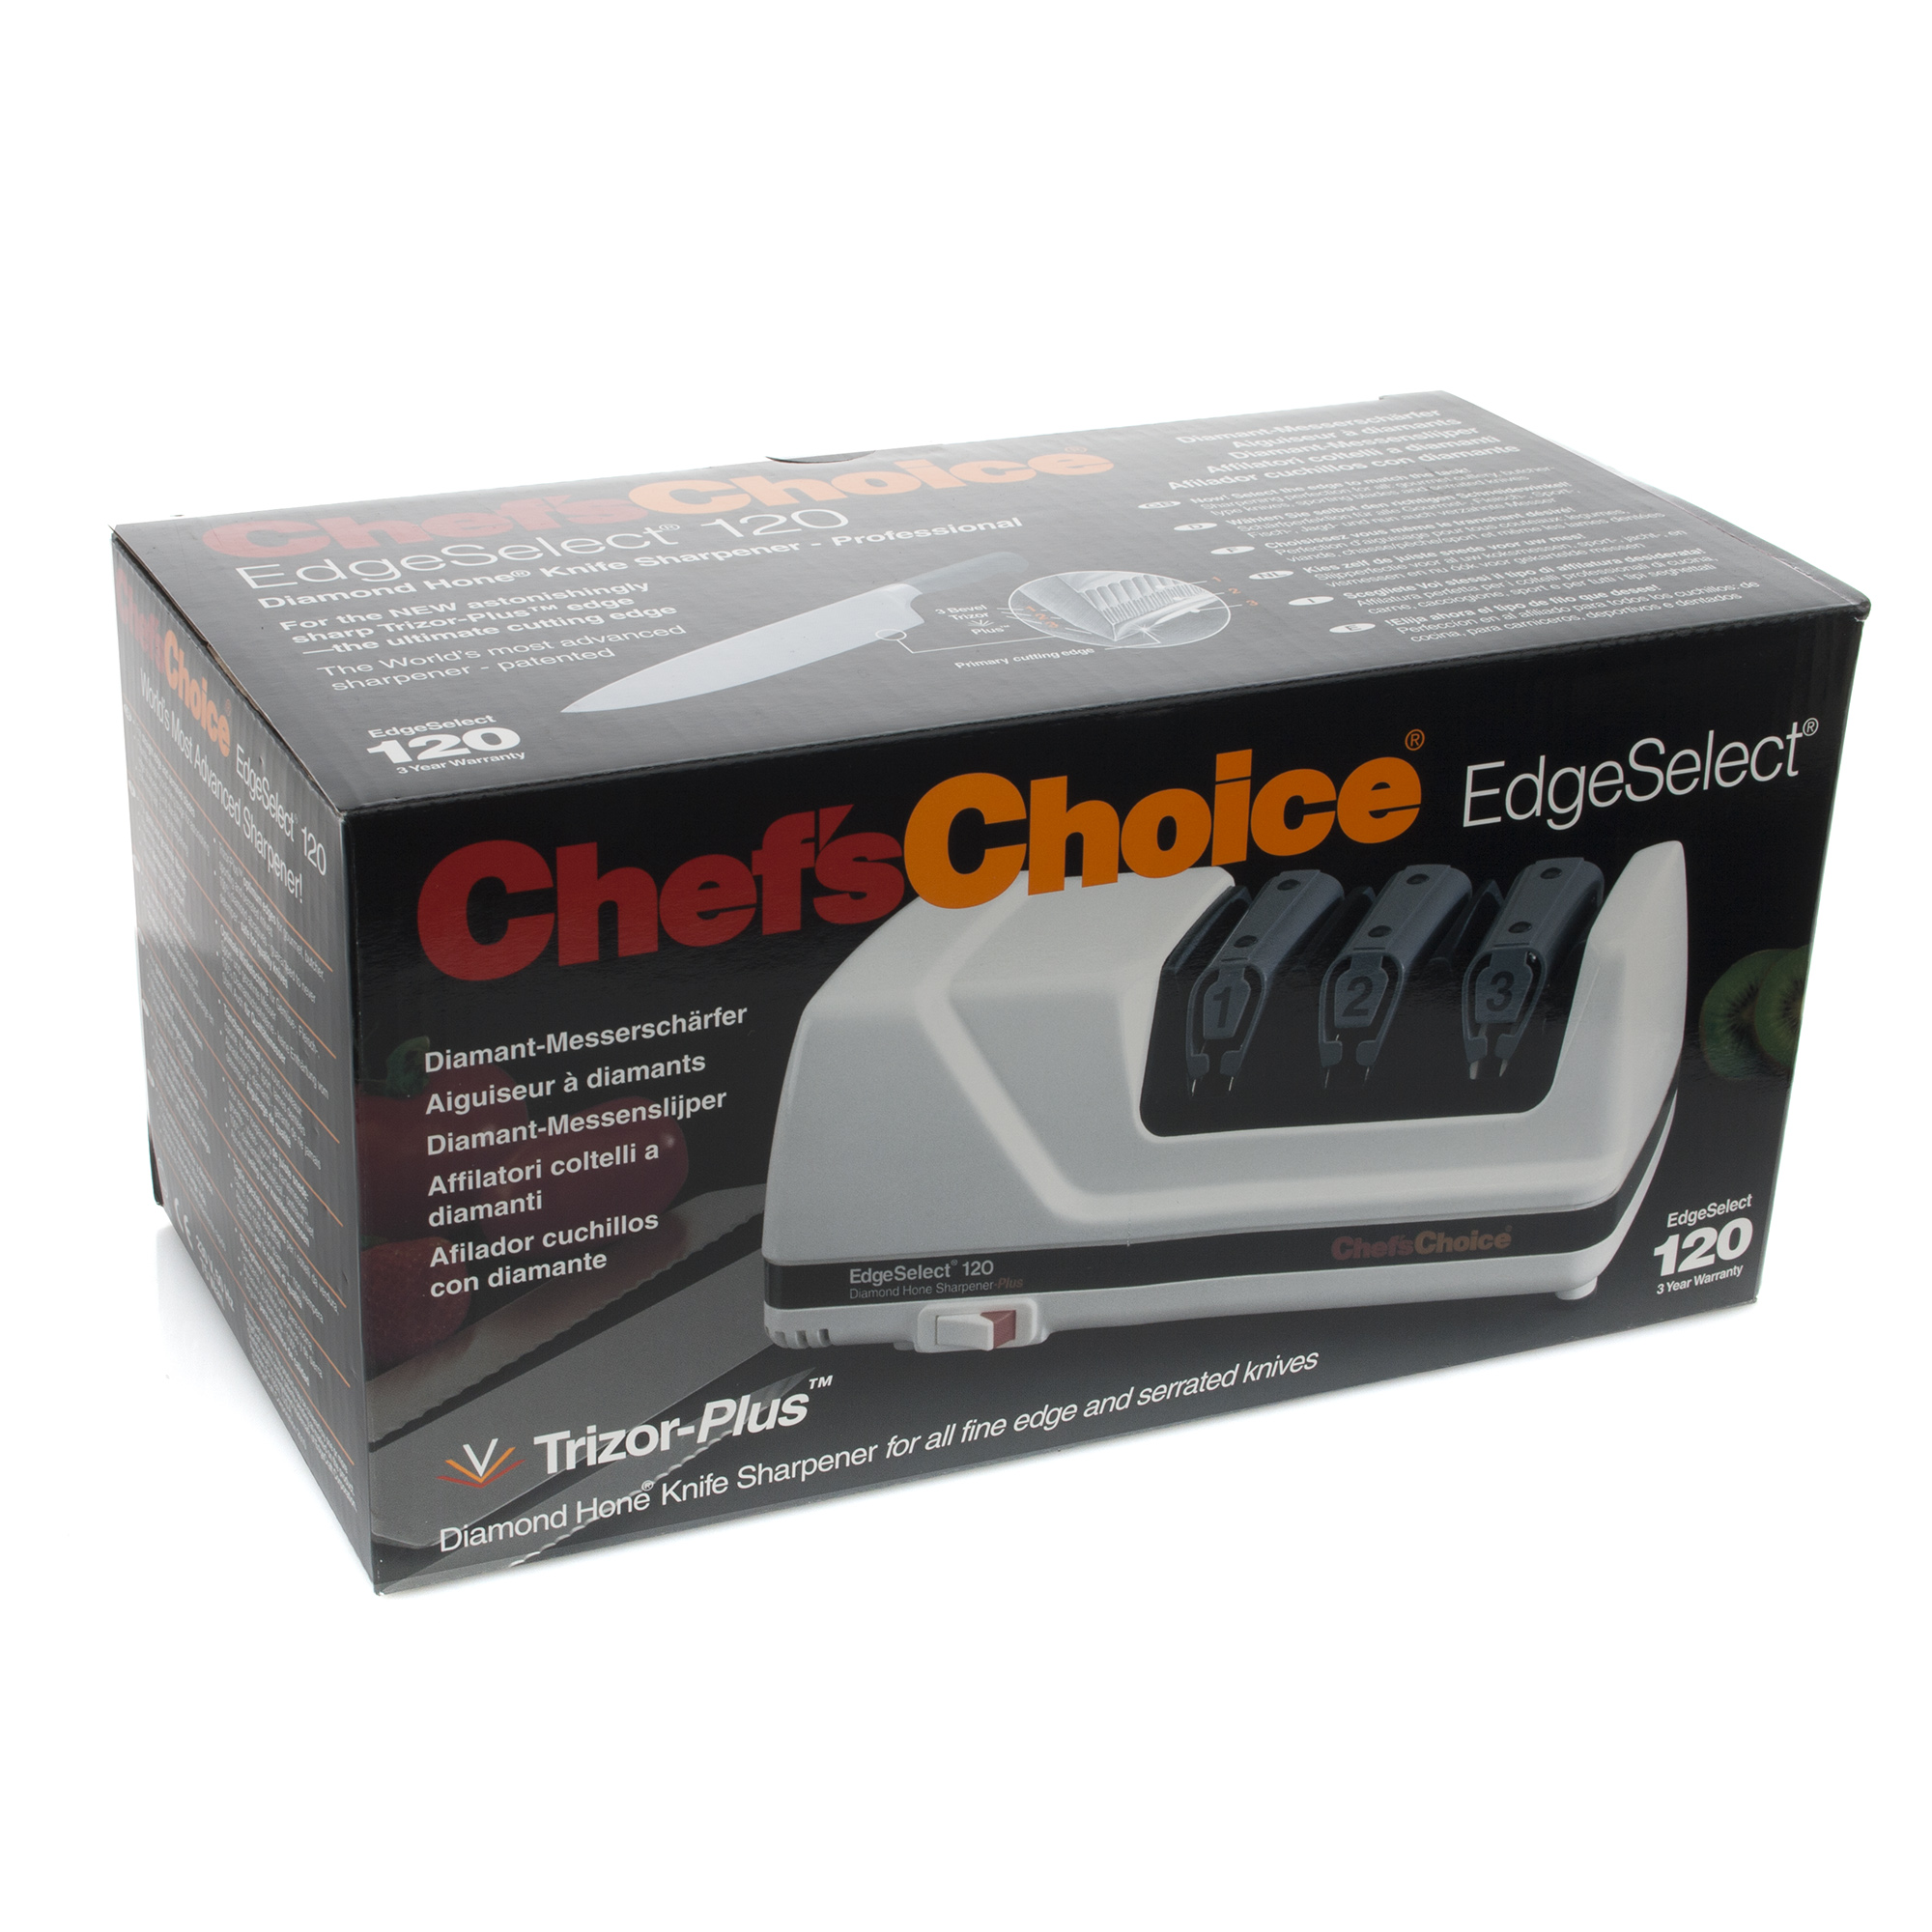 Точилка электрическая для заточки ножей, белая, серия Knife sharpeners, Chef'sChoice, США